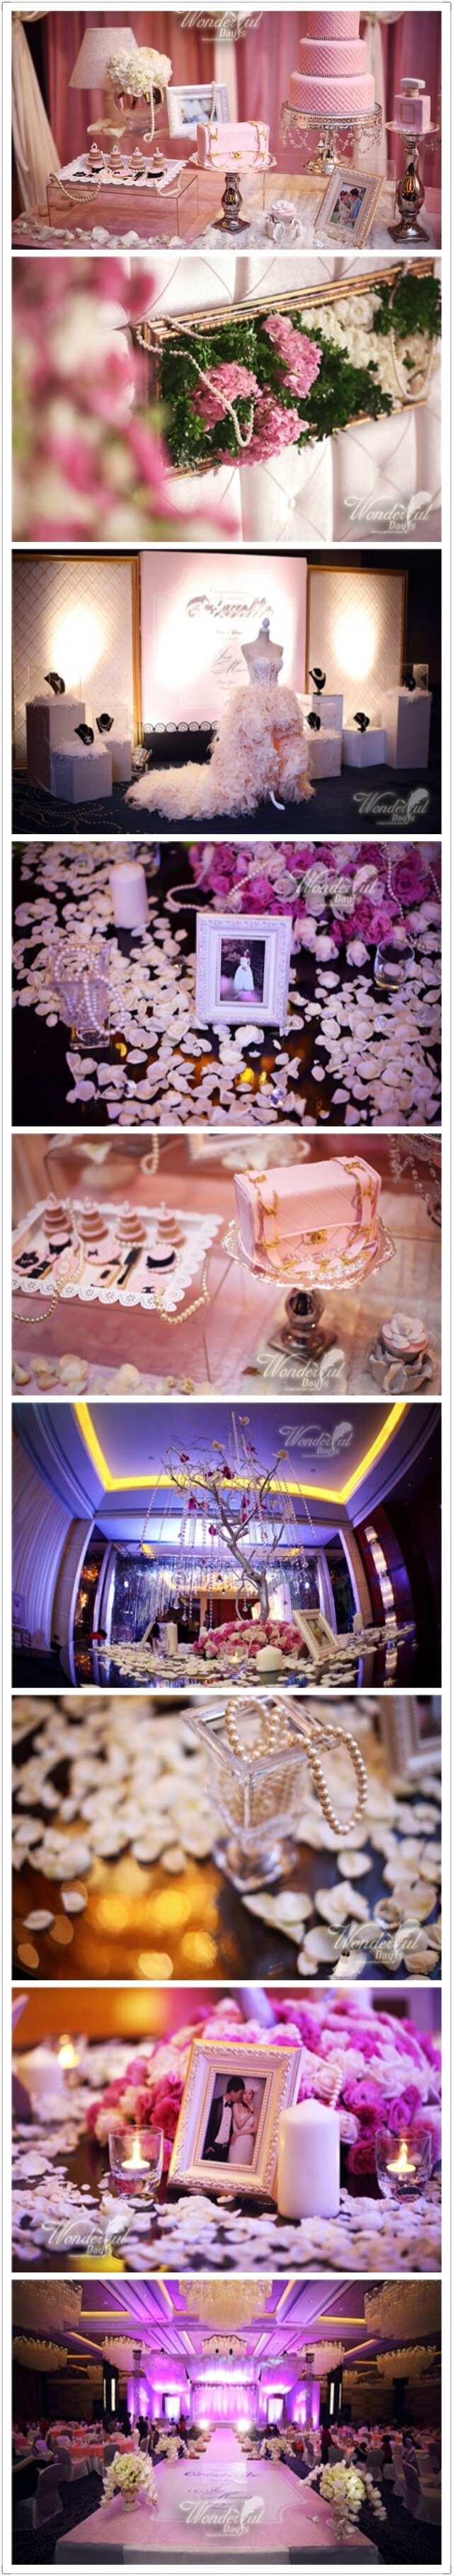 第72个婚礼：Cristalle梦幻婚礼。梦幻般的粉，优雅的香槟玫瑰，散发着柔和光芒的珍珠，还有甜甜的蛋糕甜品都让这场婚礼显得优雅浪漫。整个婚礼都散发着Cristalle的梦幻芳香。